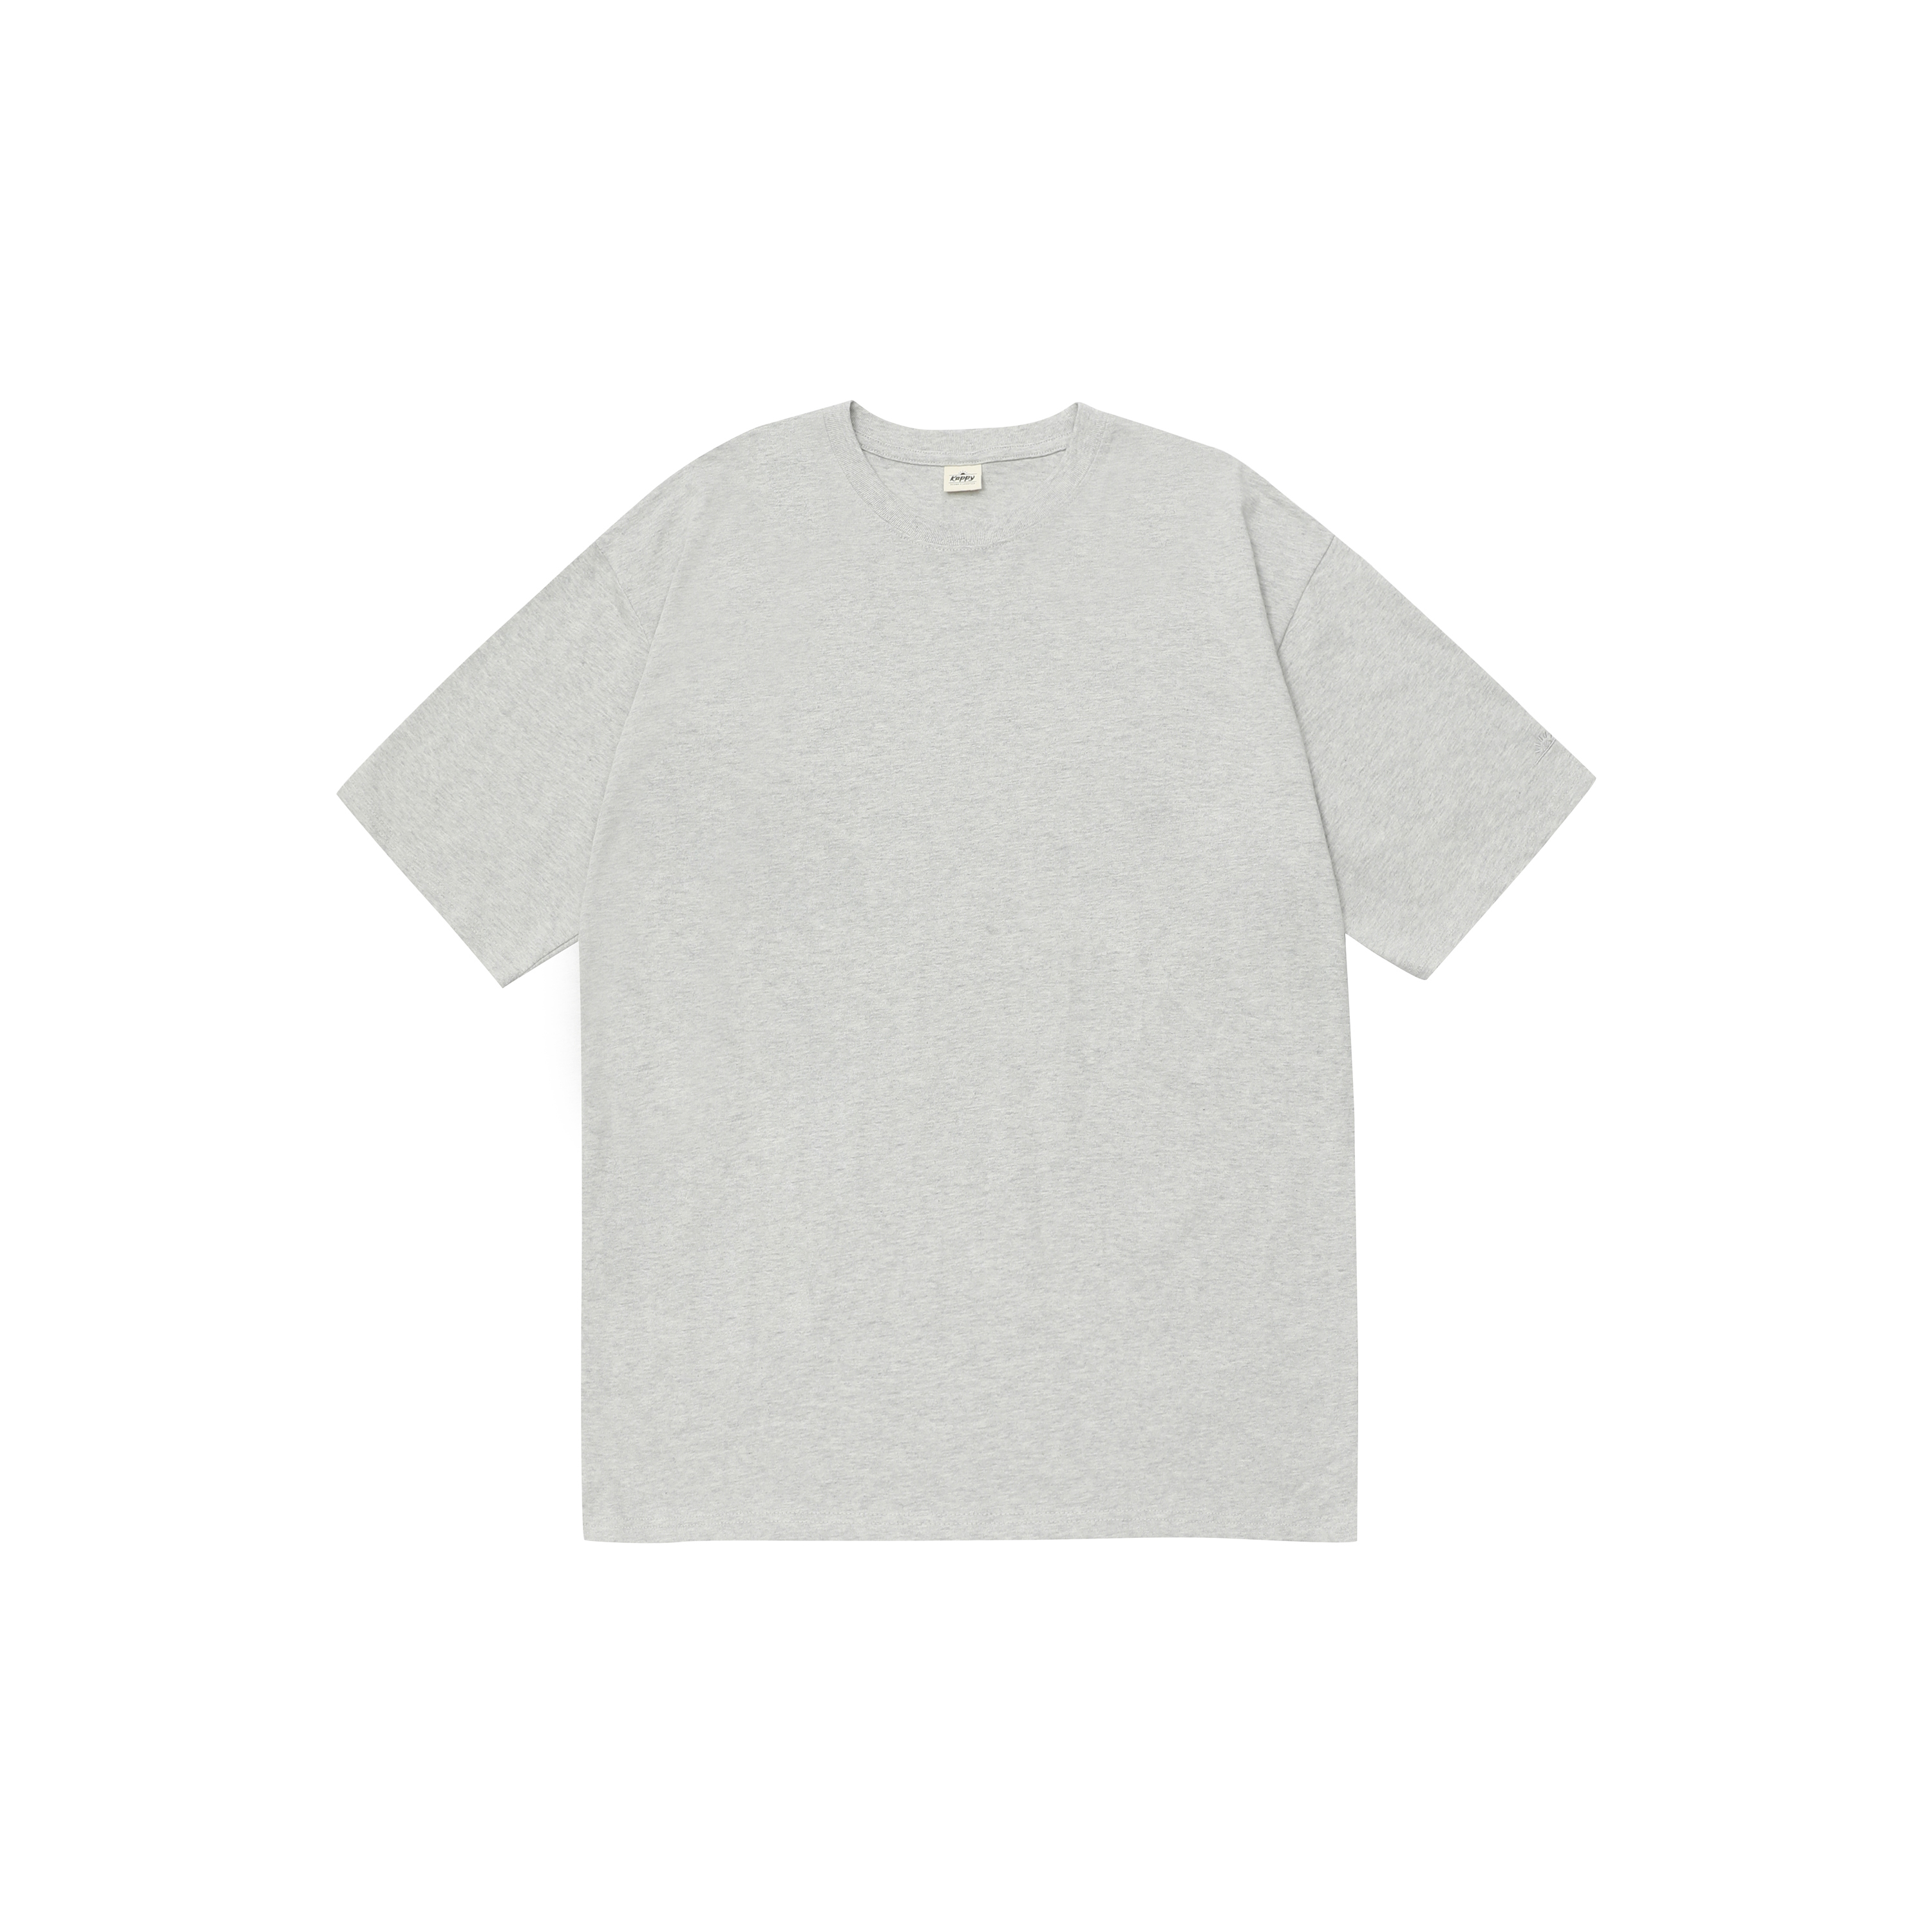 Kappy plain t-shirt melange grey